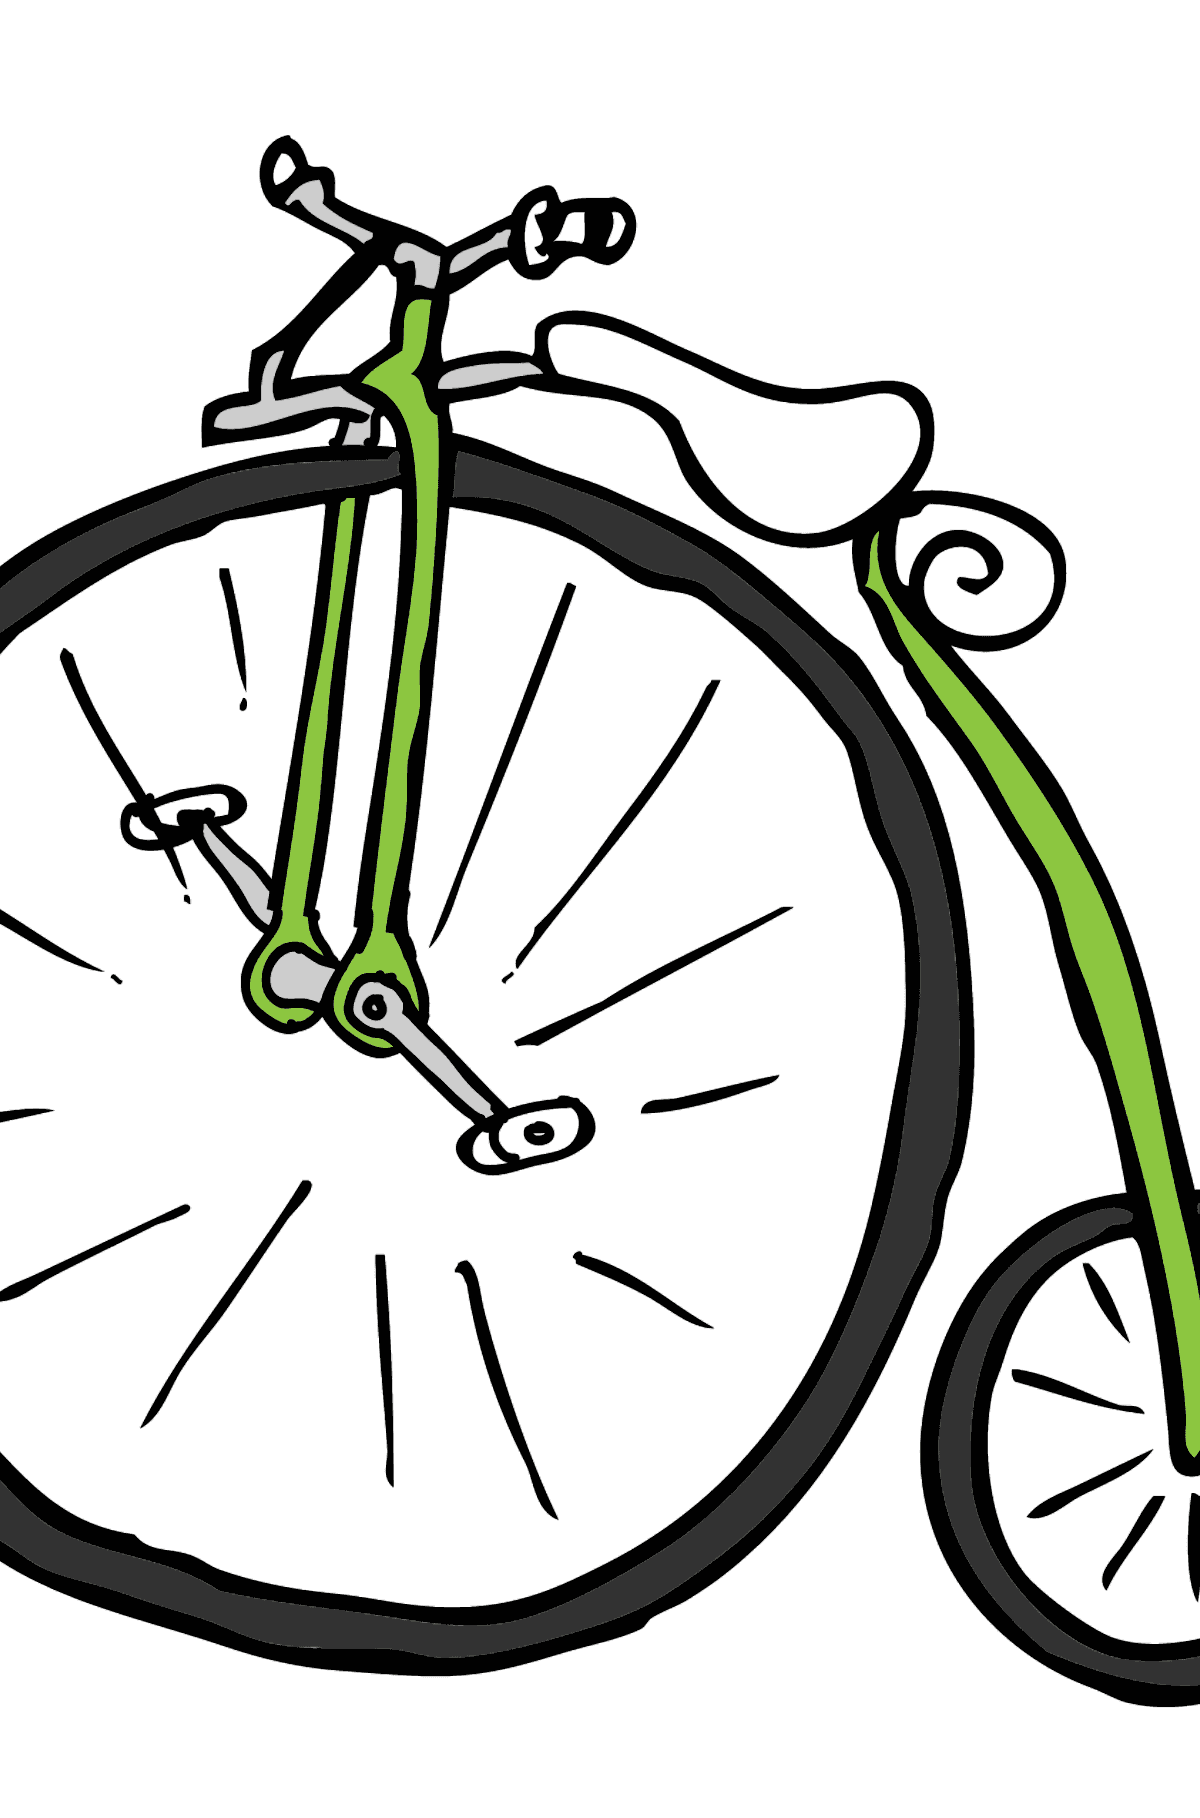 Coloriage - Un cycle à roues élevées - Unicycle - Coloriages pour les Enfants